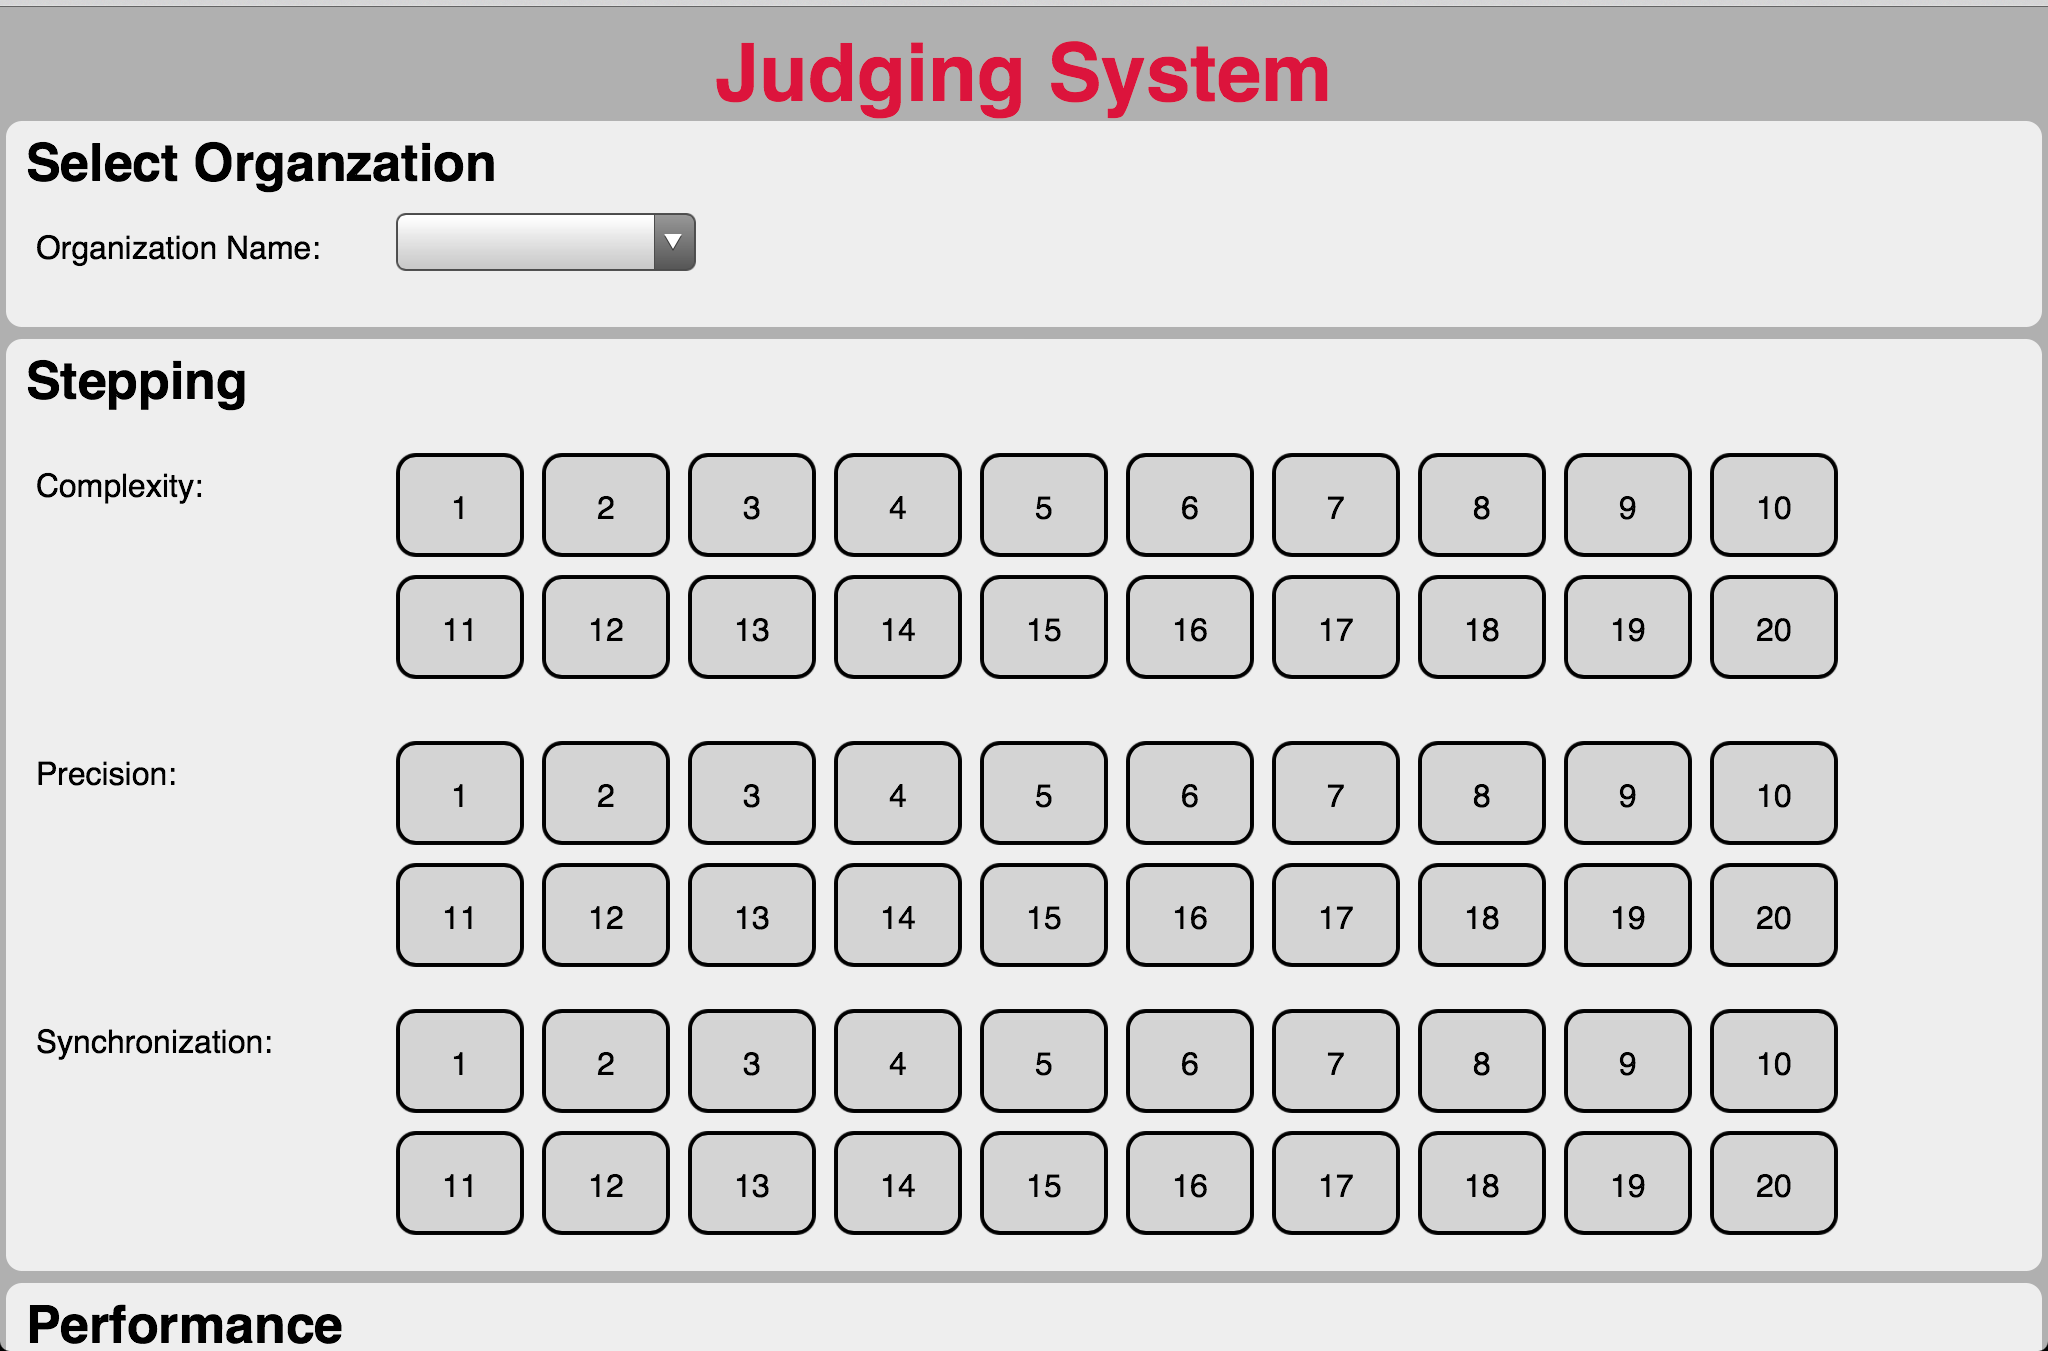 Judging System